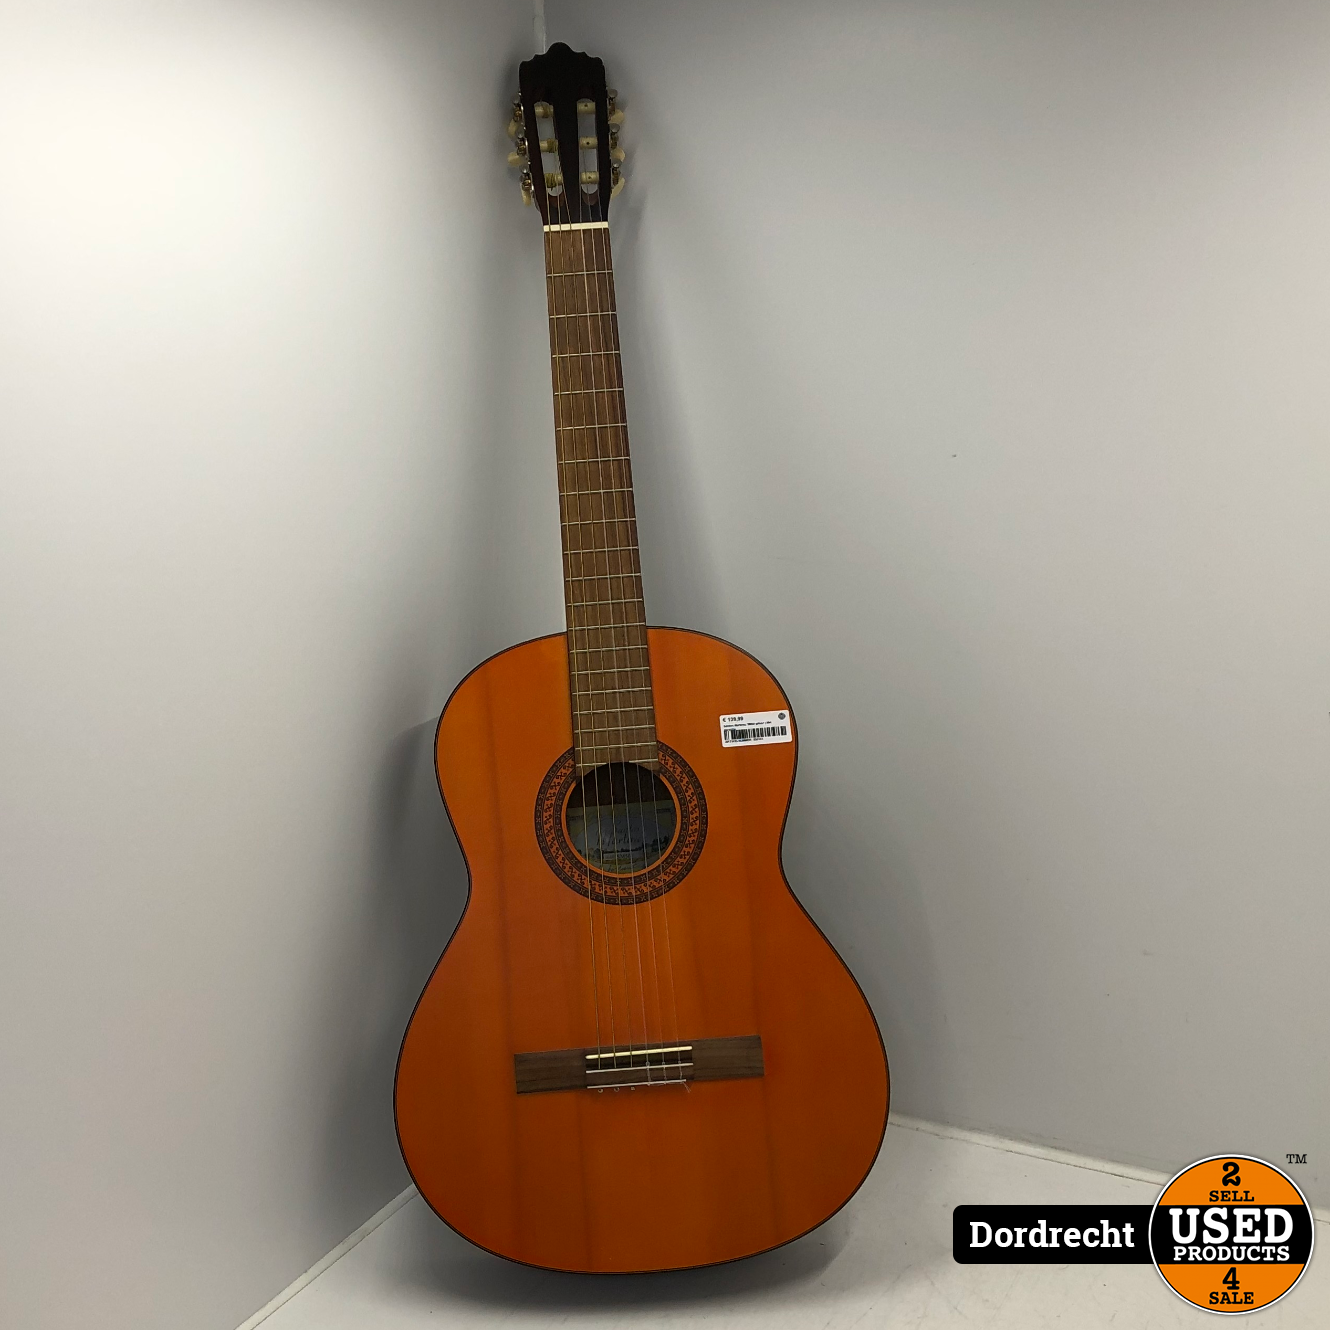 boycot helper voordelig Santos Martinez SM50 gitaar | Met garantie - Used Products Dordrecht